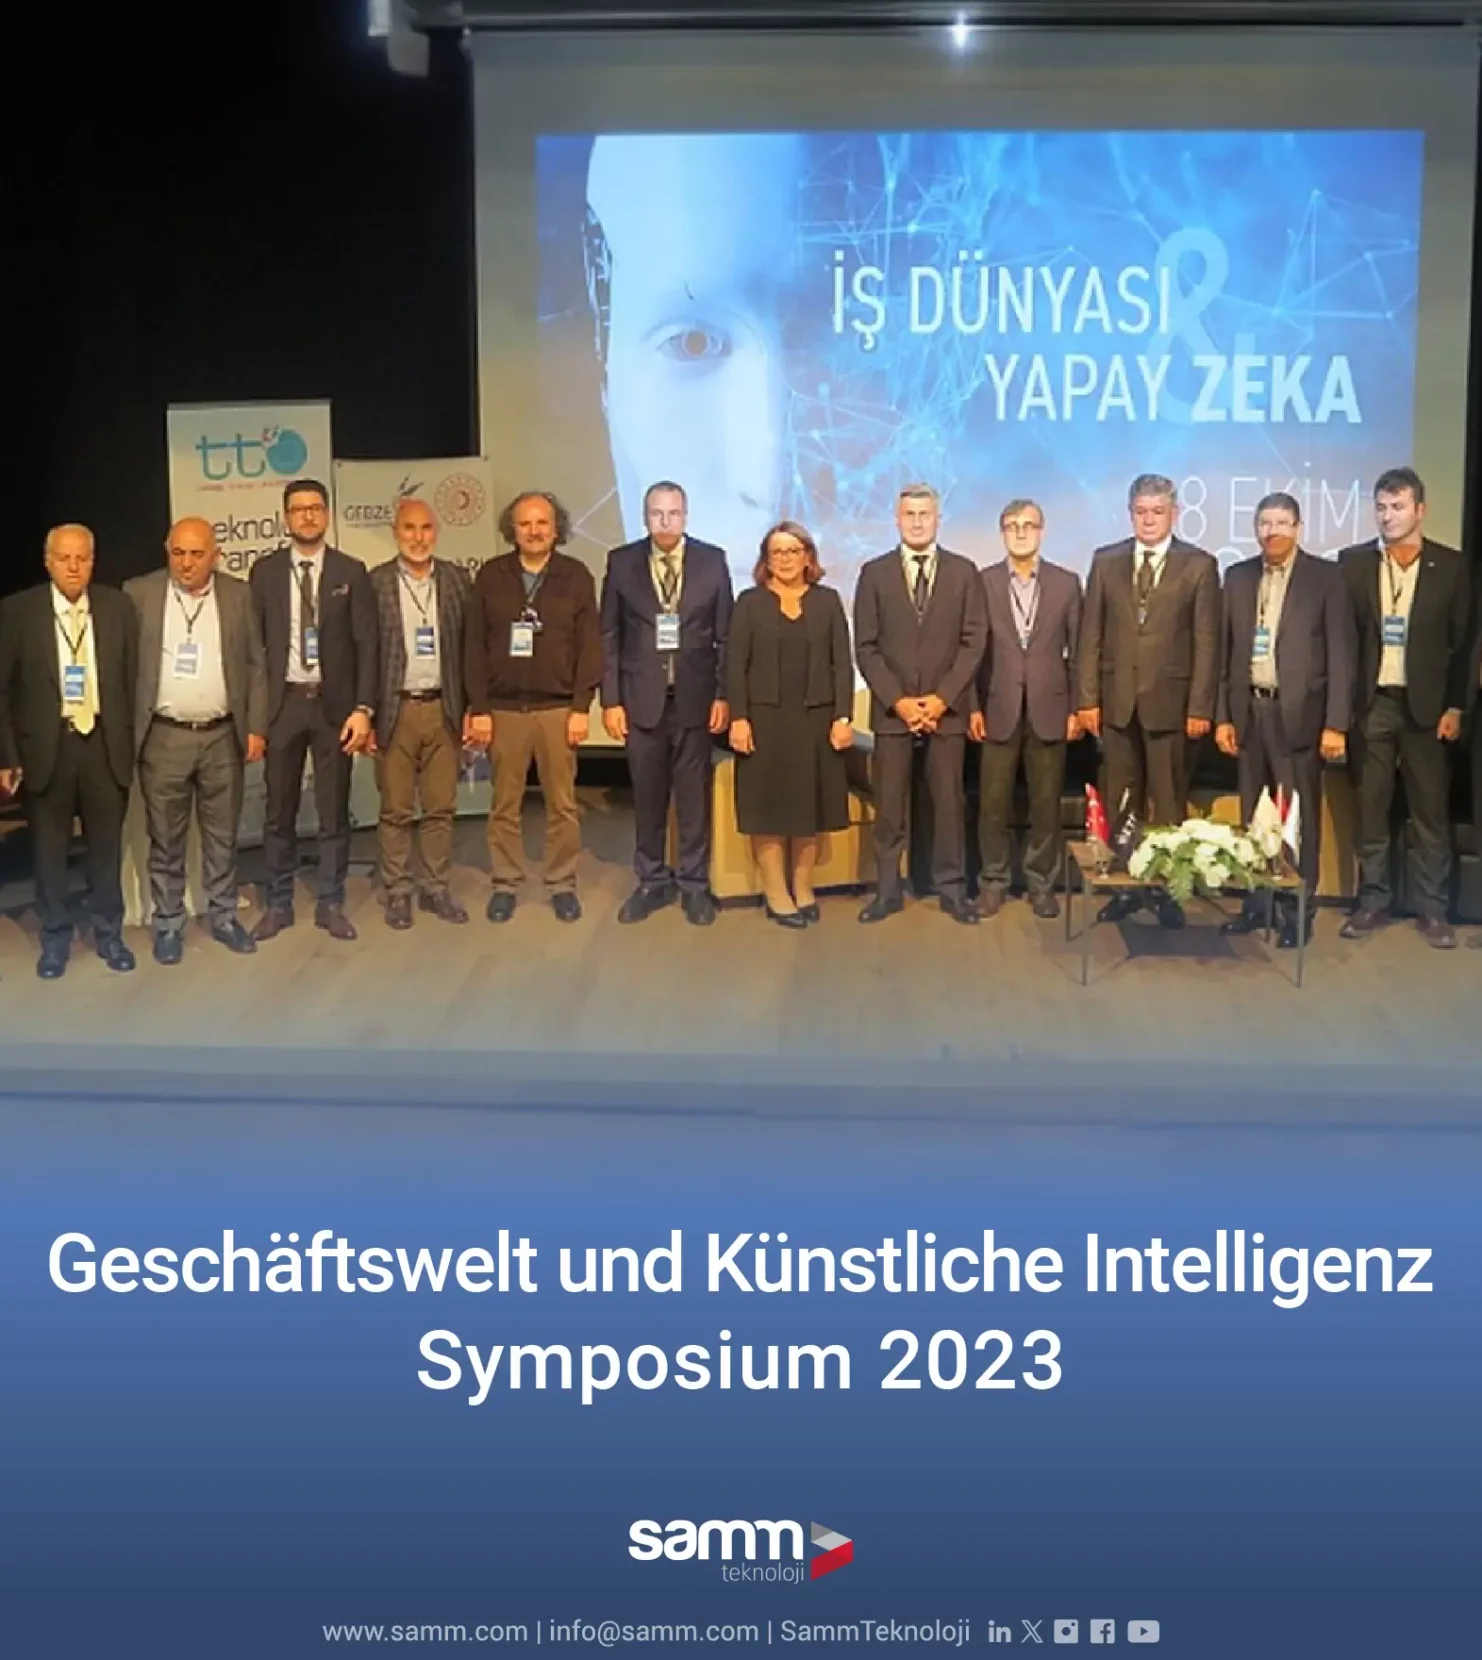 Symposium zu Wirtschaft und künstlicher Intelligenz von drei Institutionen